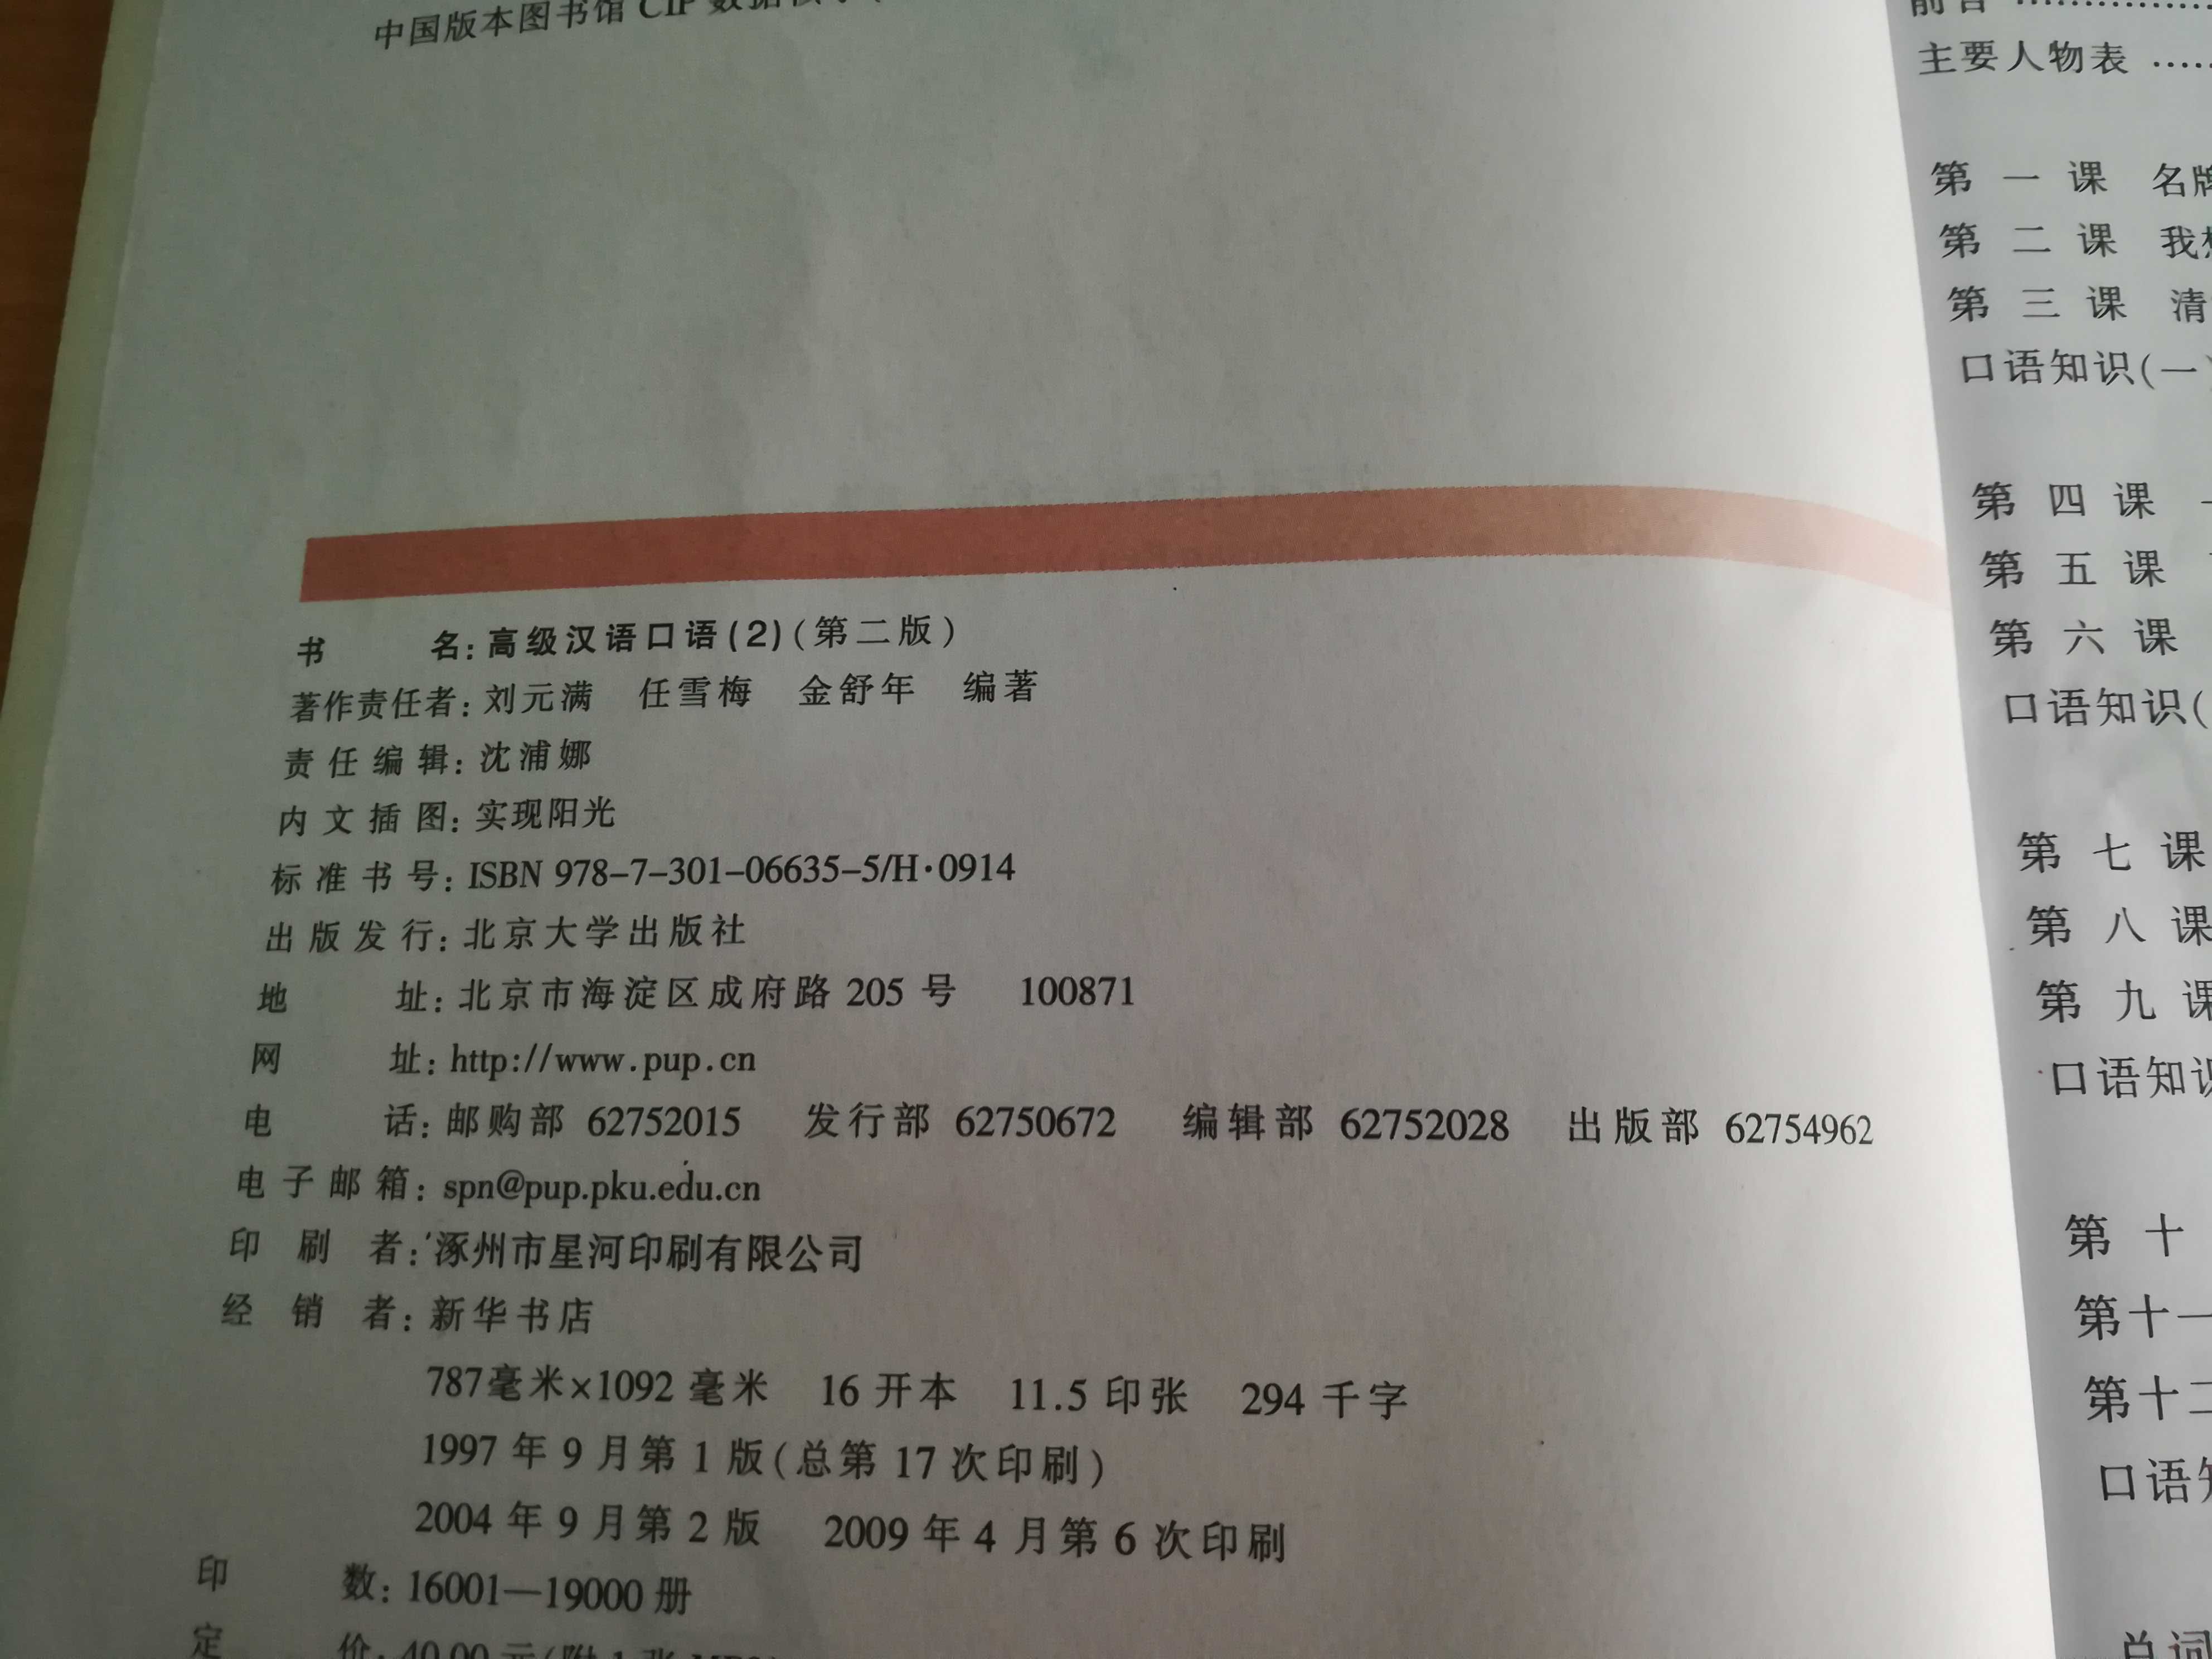 Advanced Spoken Chinese, 高级汉语口语 2，Liu Yuanman, Peking University Press